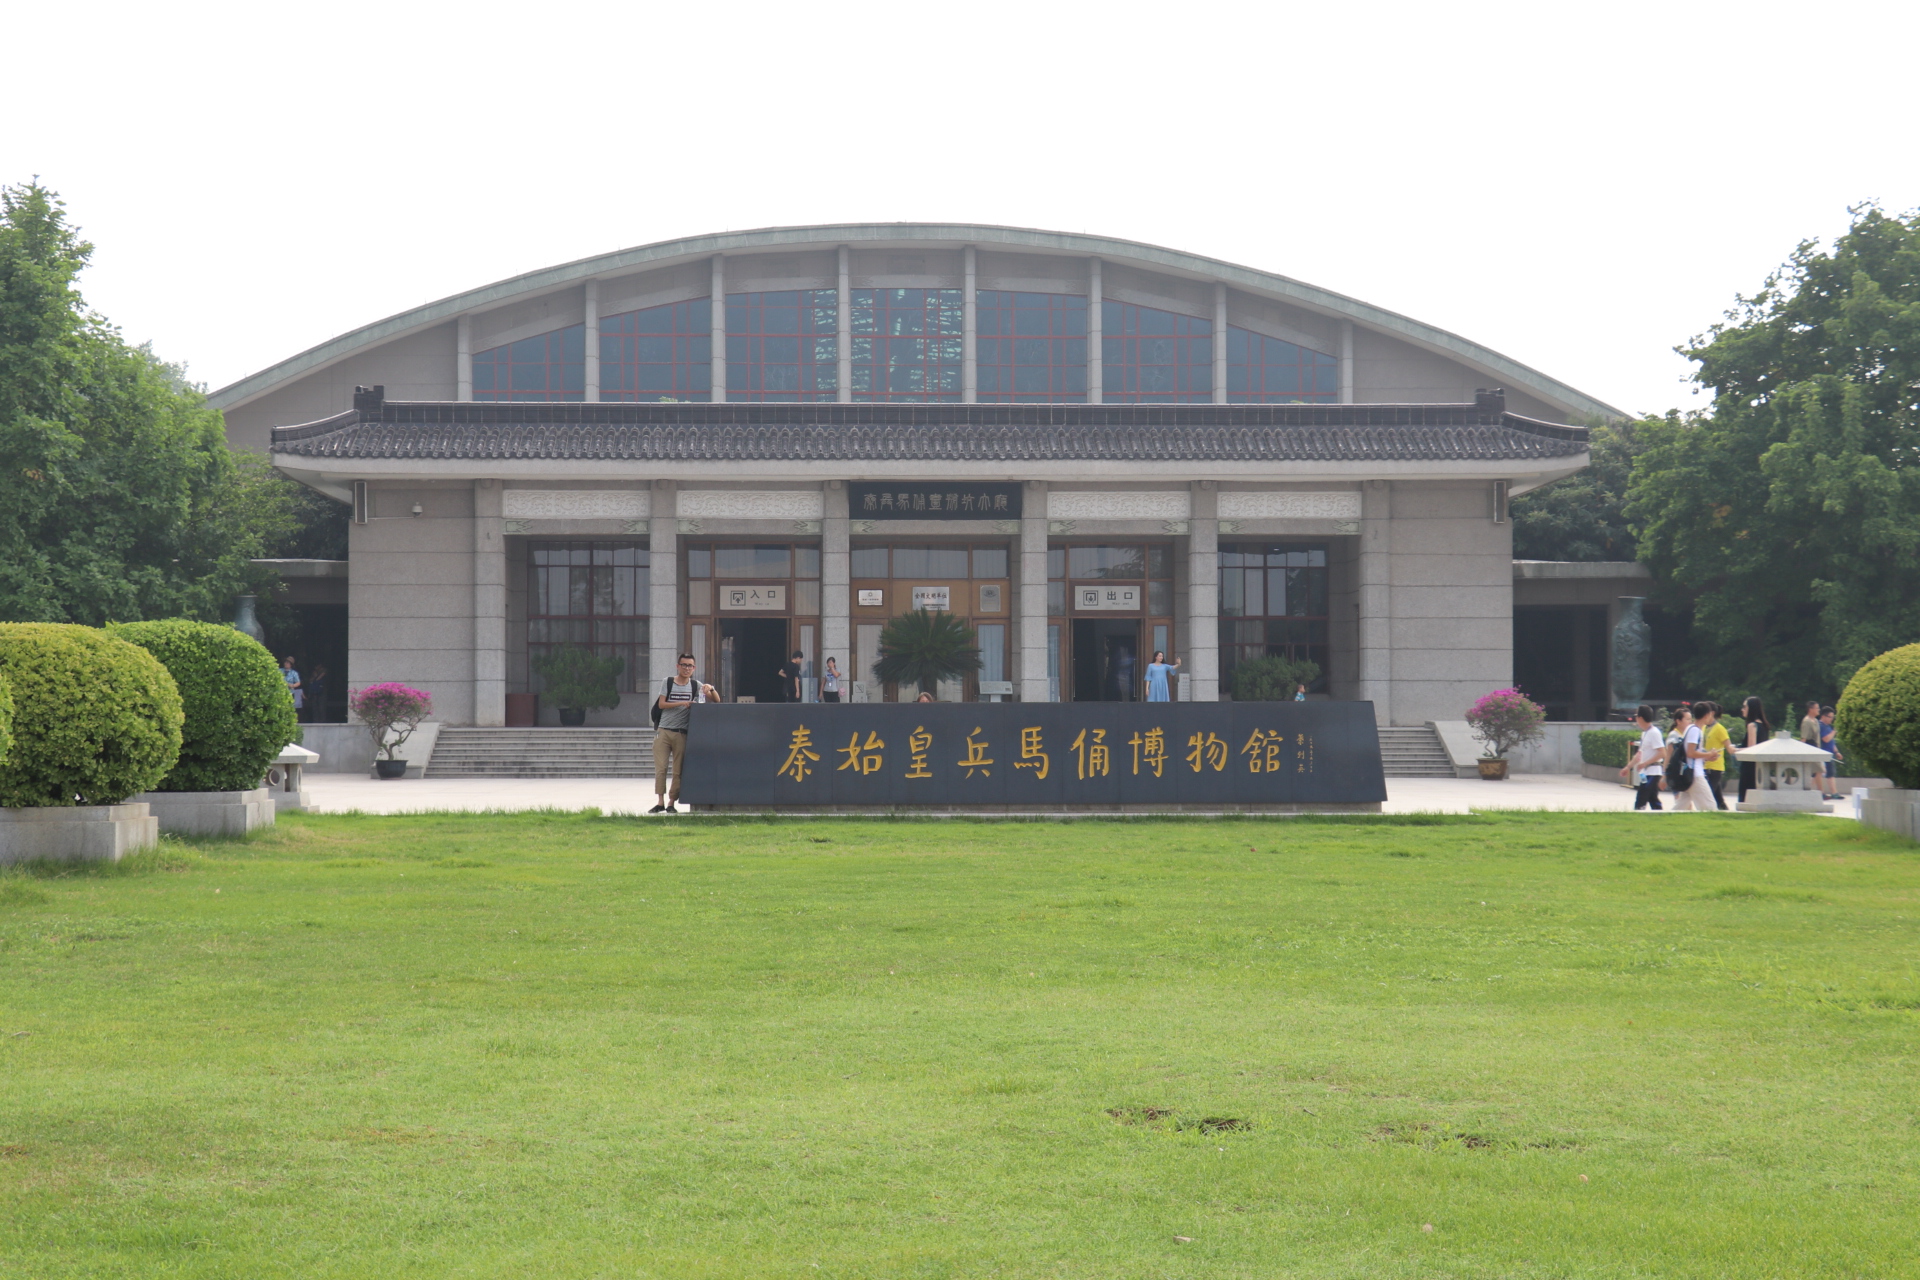 正在修建的秦始皇陵遗址公园将于2010年落成,将与秦兵马俑博物馆一起